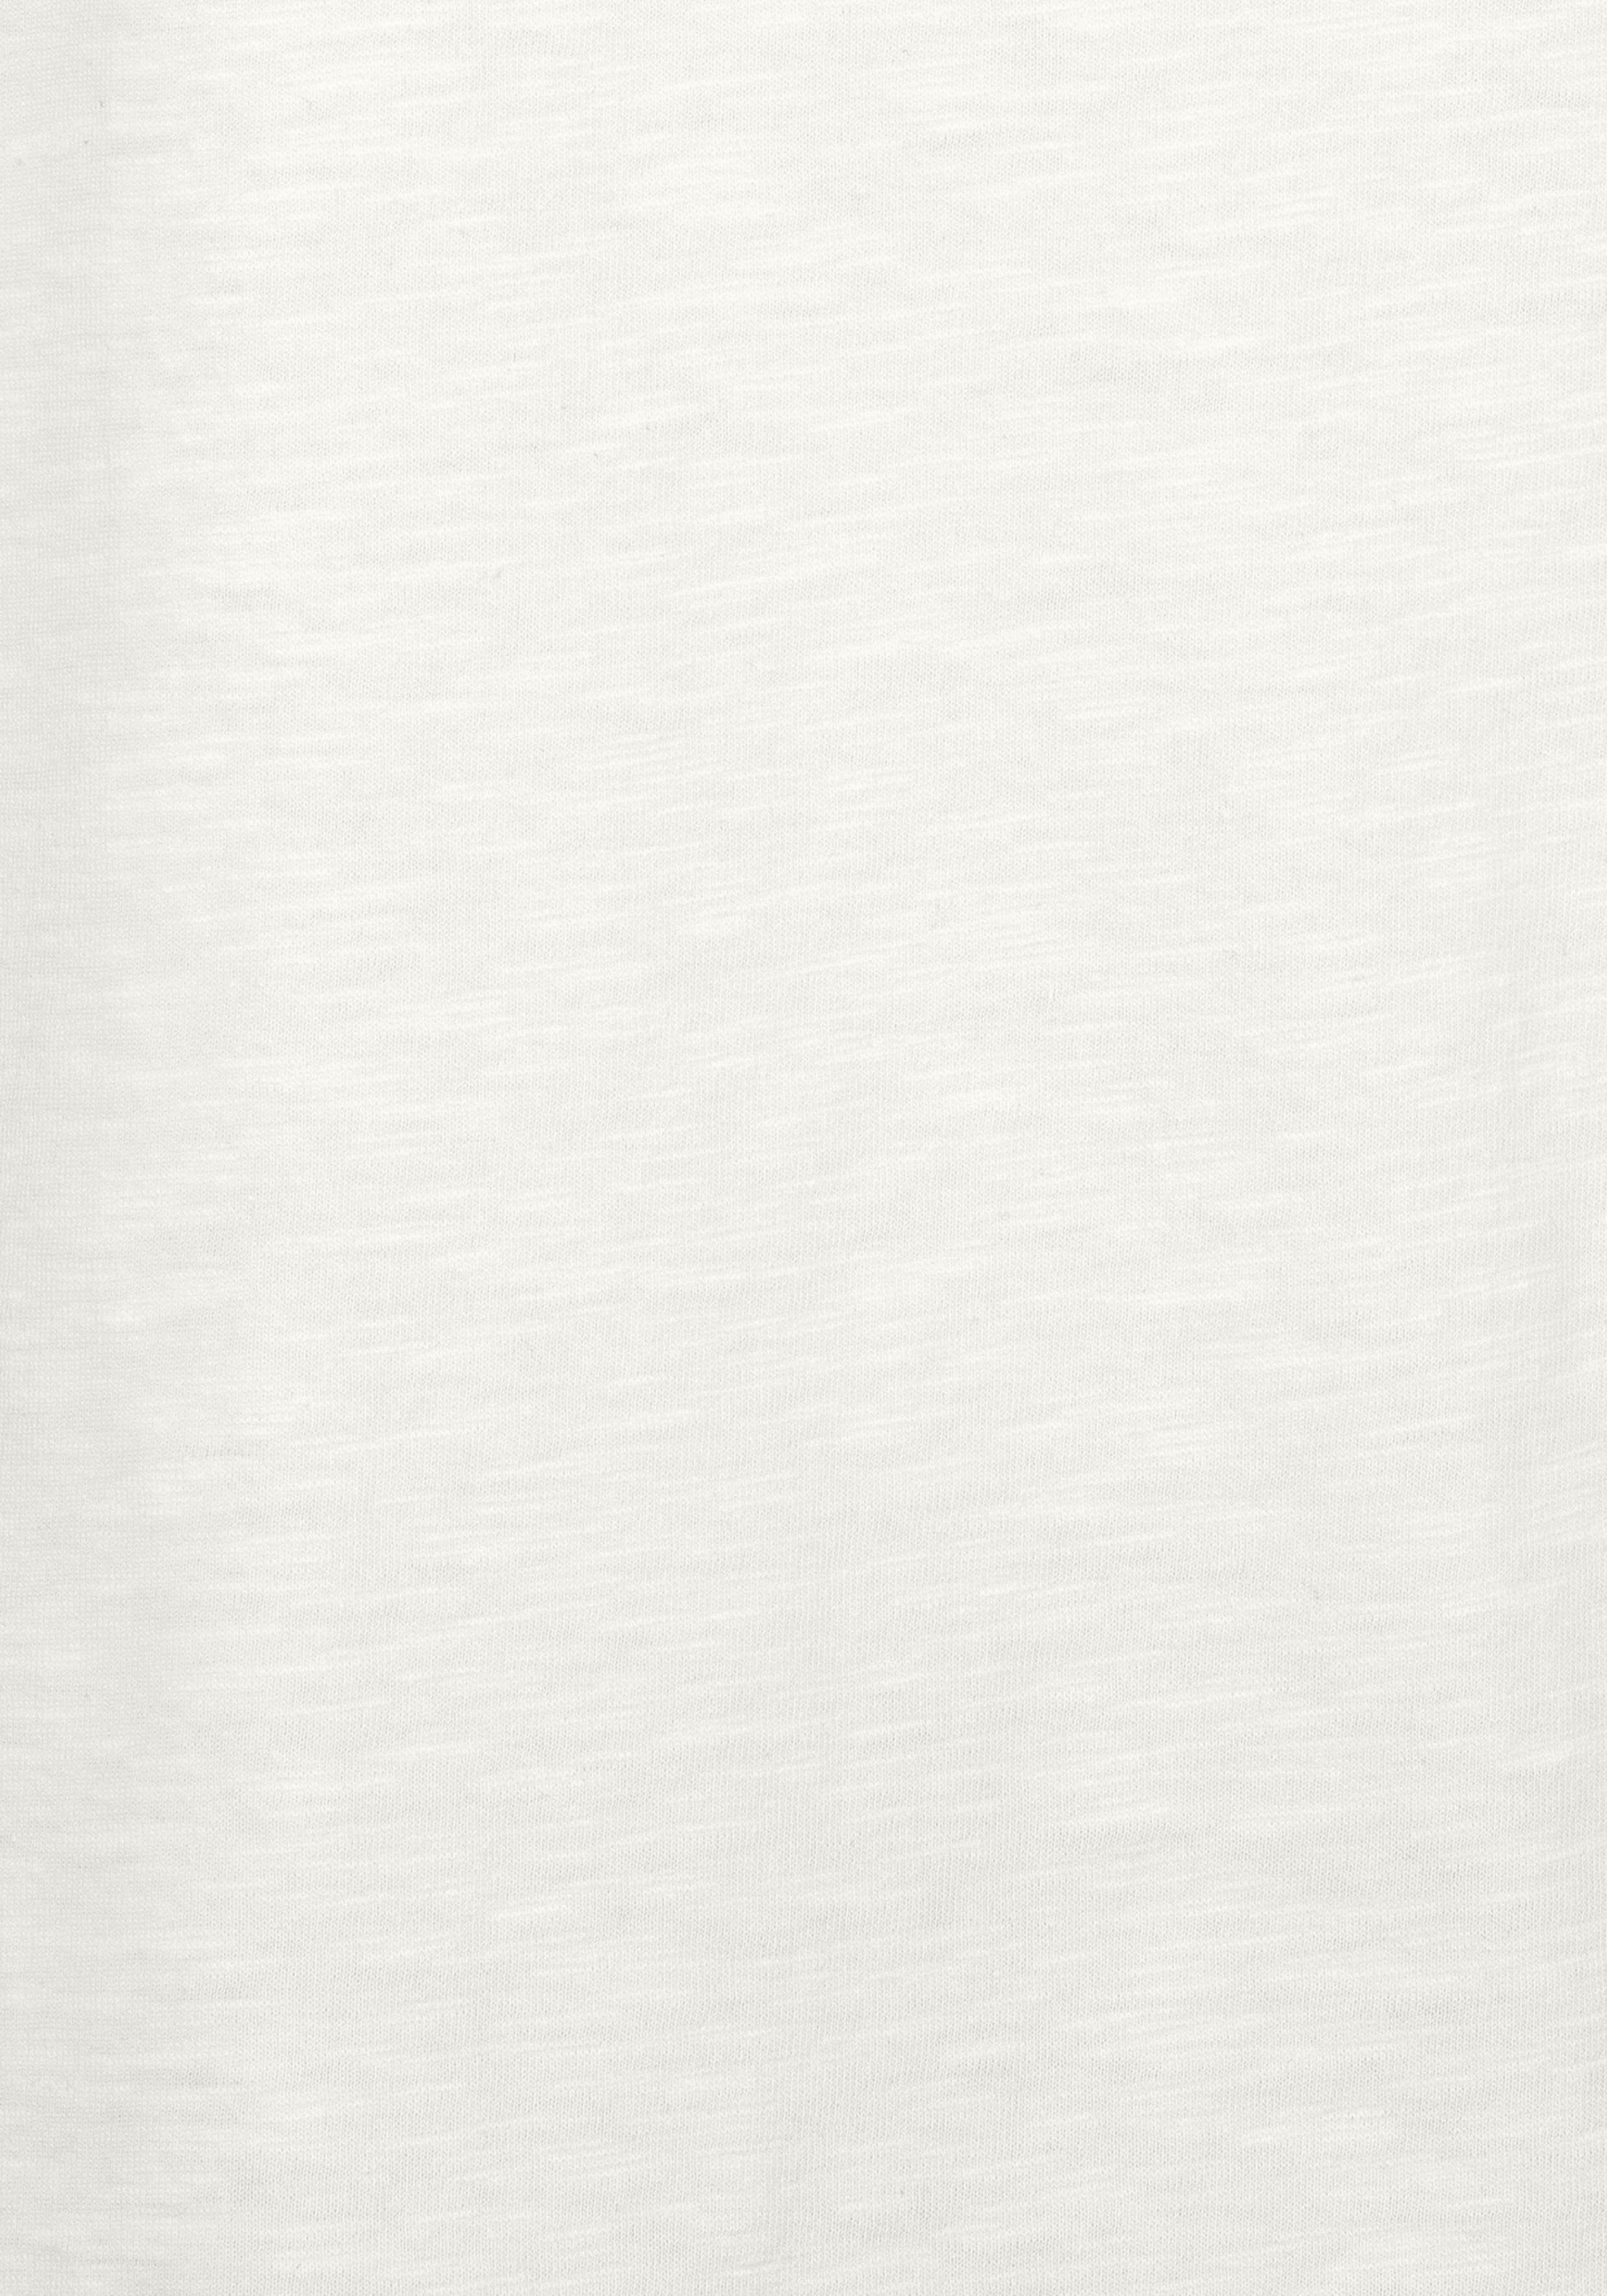 Vivance T-Shirt der mit Häkelspitze 2er-Pack) Schulter creme schwarz, (Packung, an